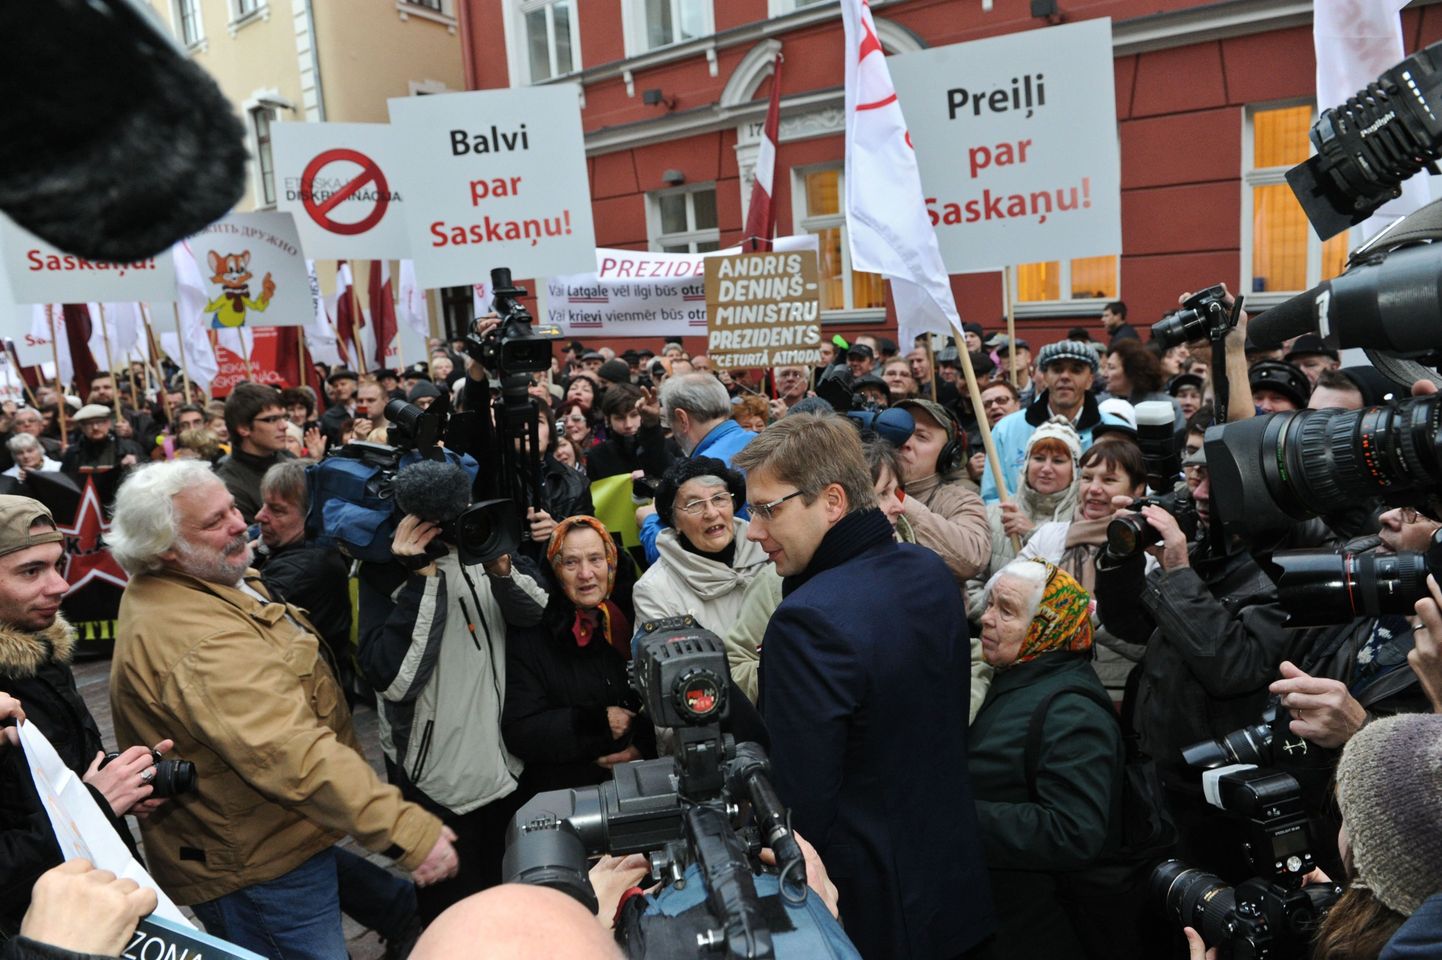 Лидер «Центра согласия» Нил Ушаков на митинге несогласных с тем, что партию, которую массово поддерживает русскоязычное население, опять не пустили в правительство.